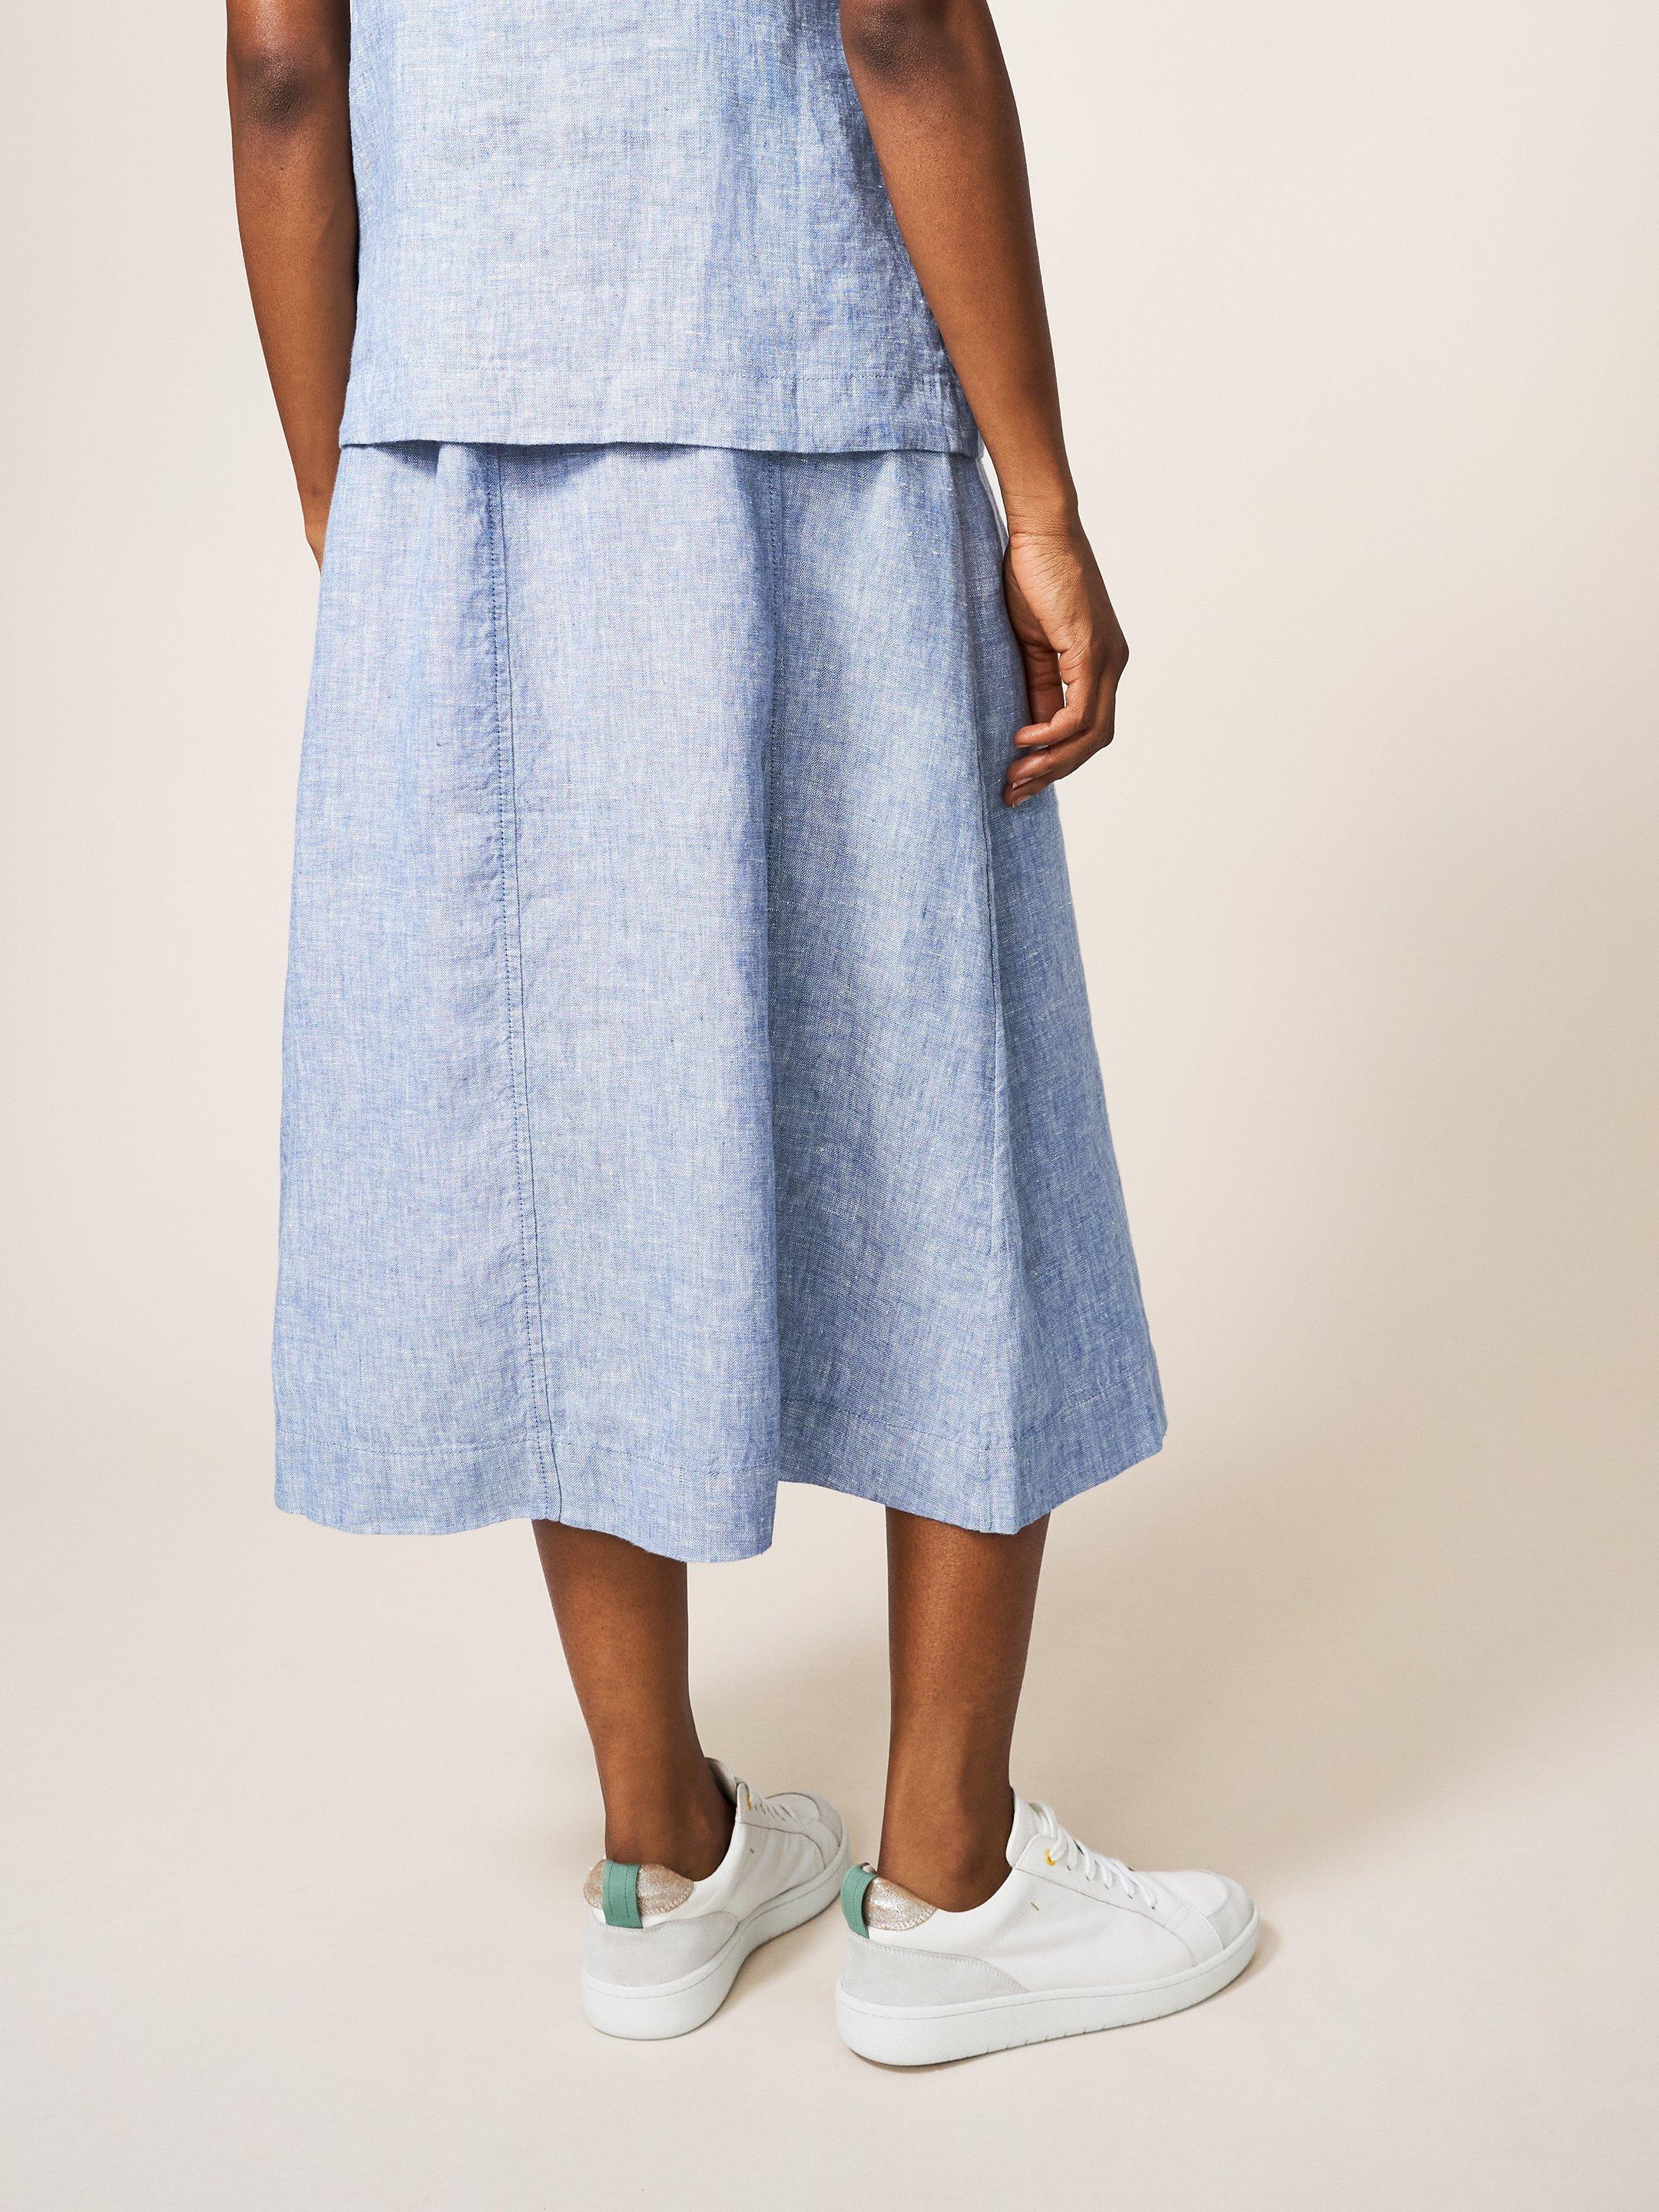 Ciara Linen Skirt in CHAMB BLUE - MODEL BACK